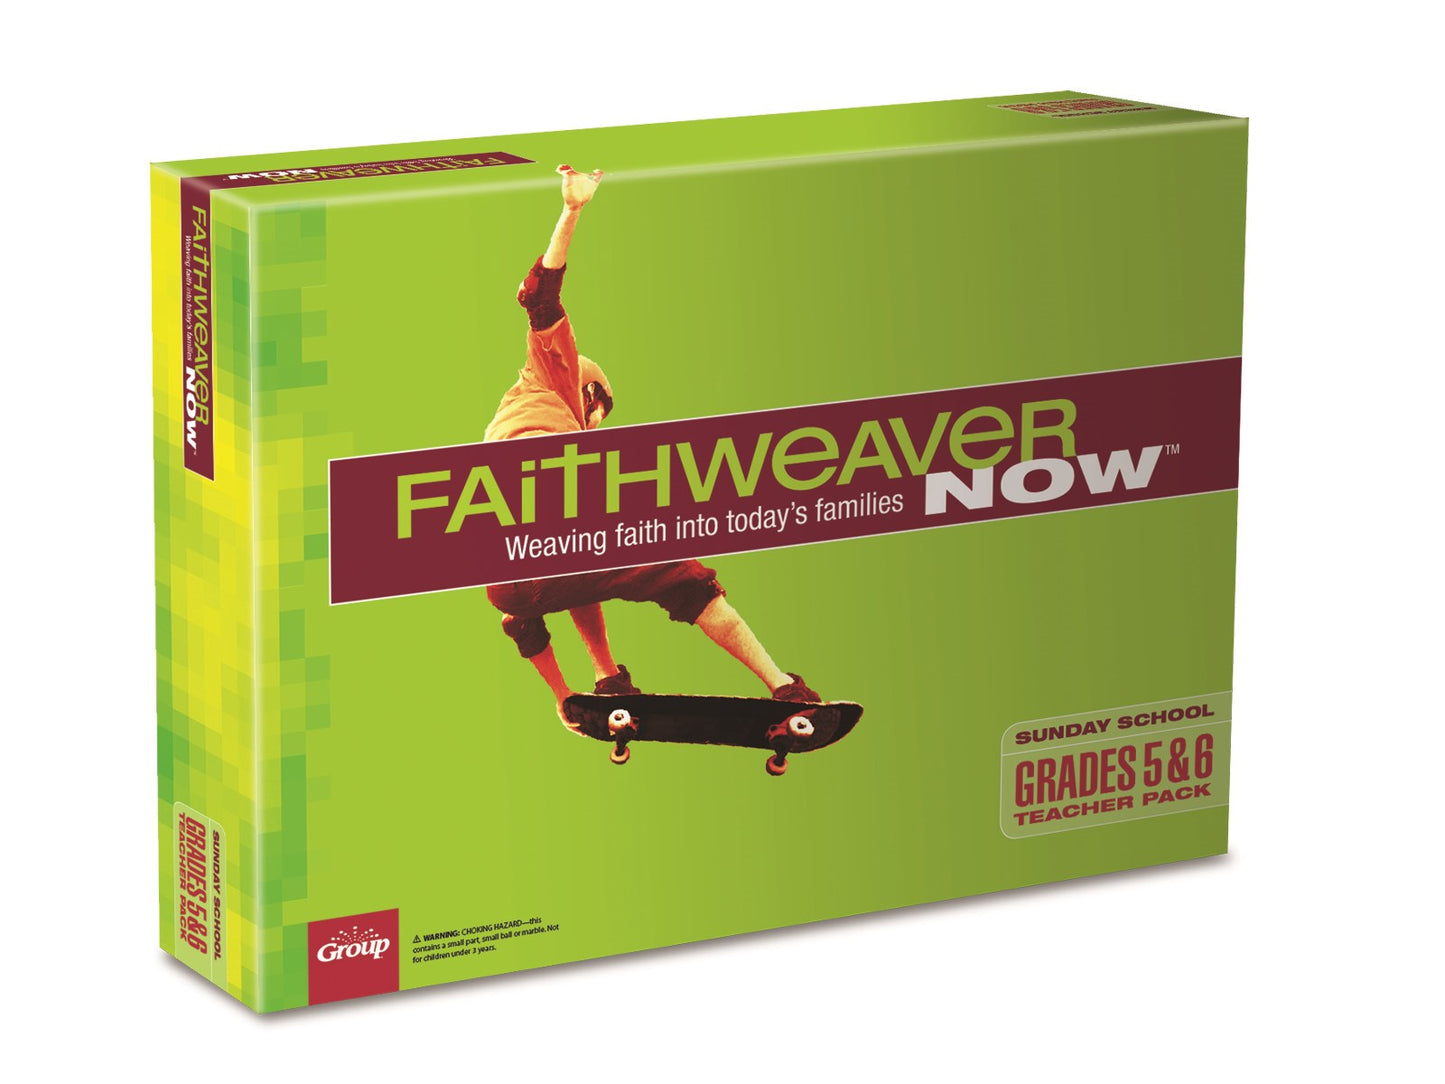 Summer 2022 FaithWeaver NOW Grades 5&6 Teacher Pack